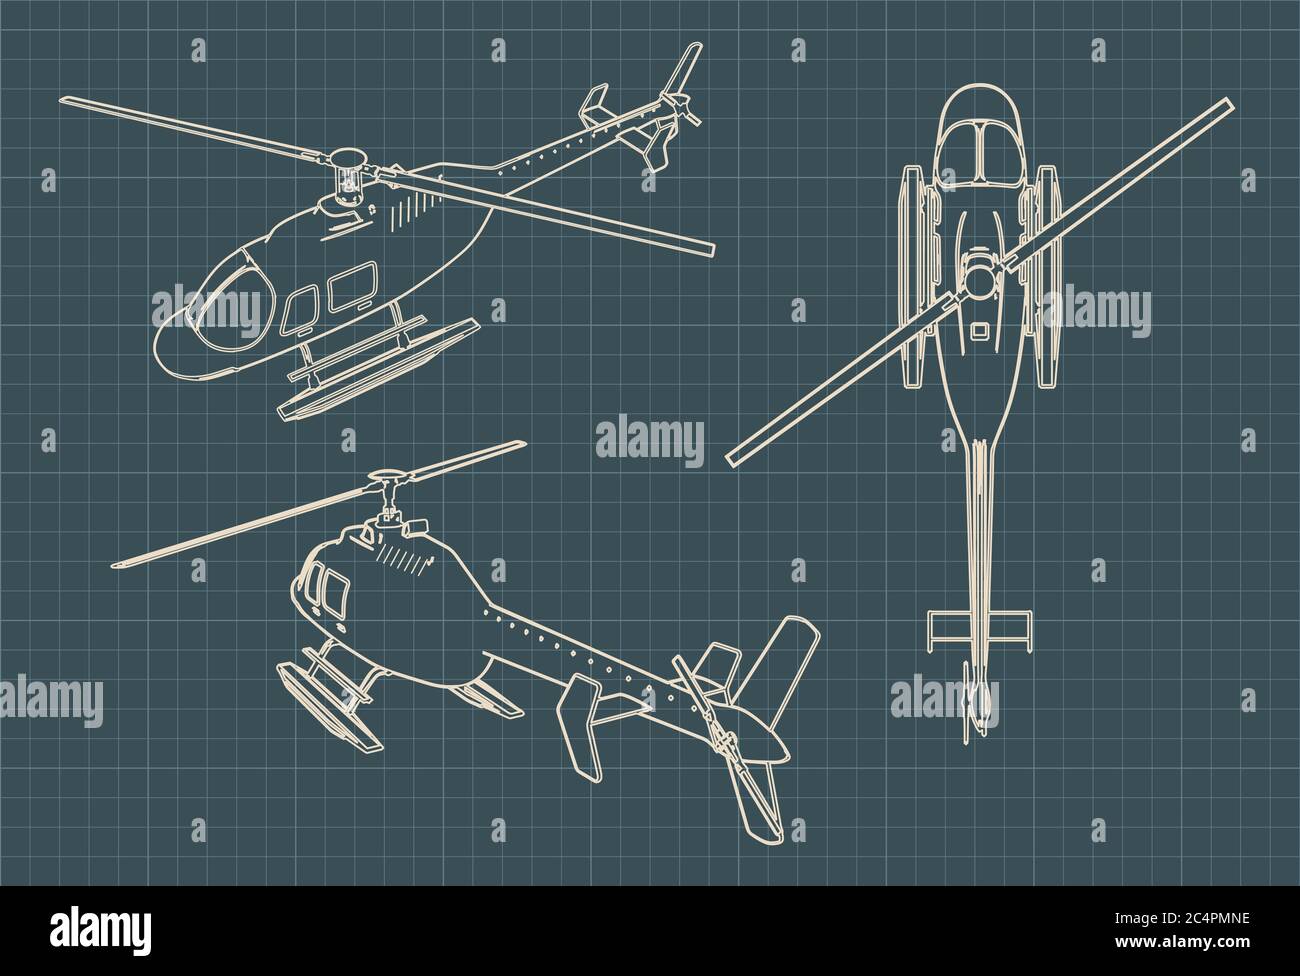 Illustration vectorielle stylisée de dessins d'un hélicoptère civil Illustration de Vecteur